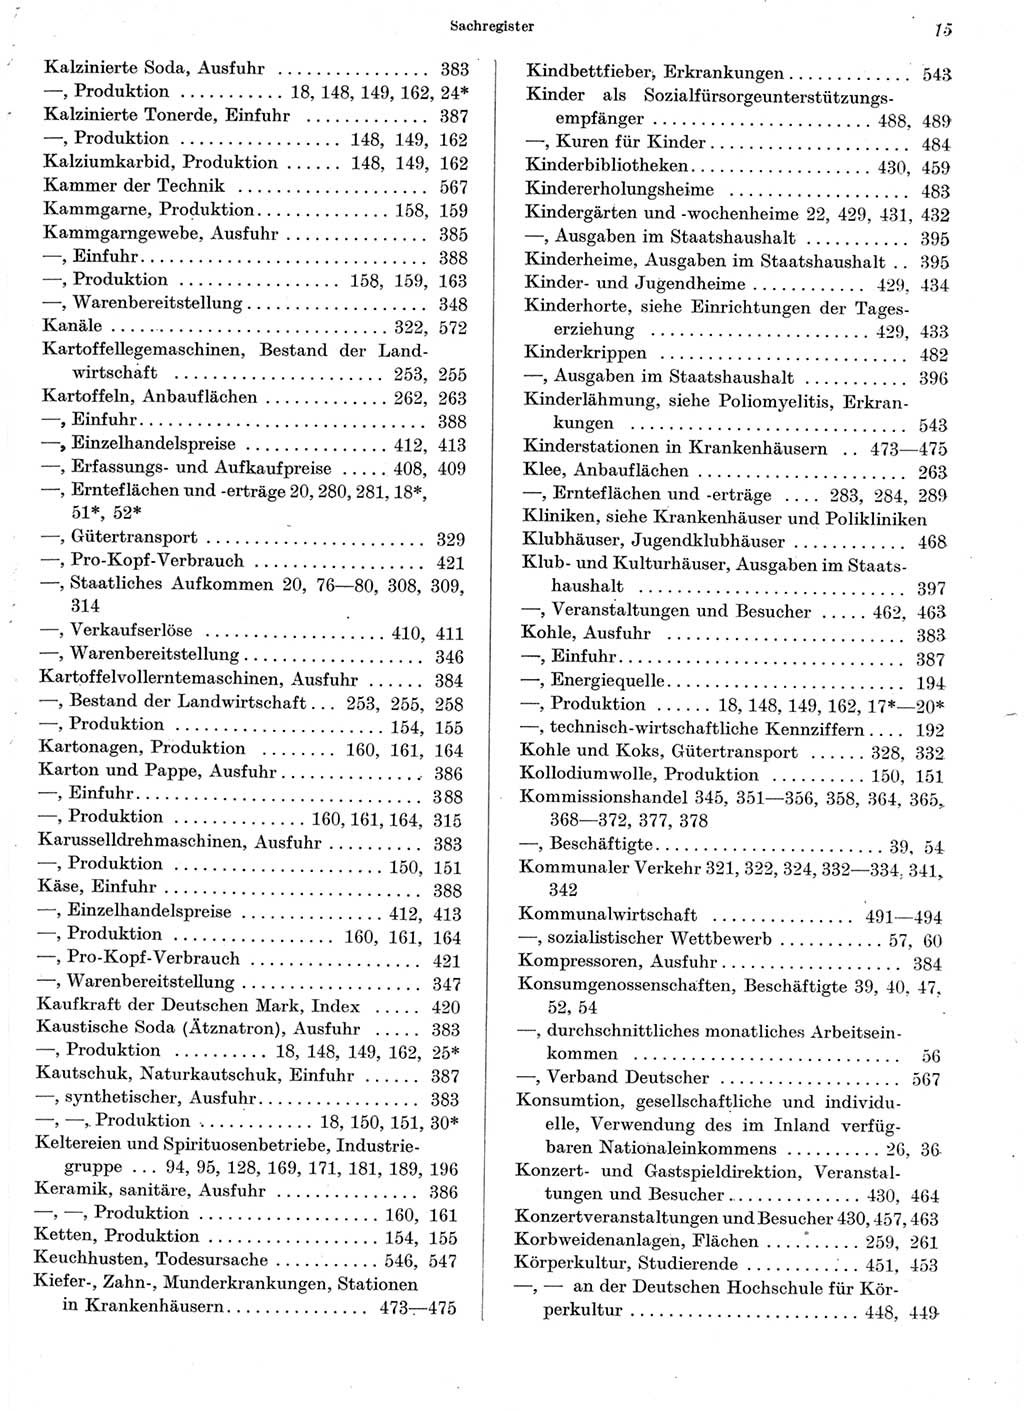 Statistisches Jahrbuch der Deutschen Demokratischen Republik (DDR) 1964, Seite 15 (Stat. Jb. DDR 1964, S. 15)